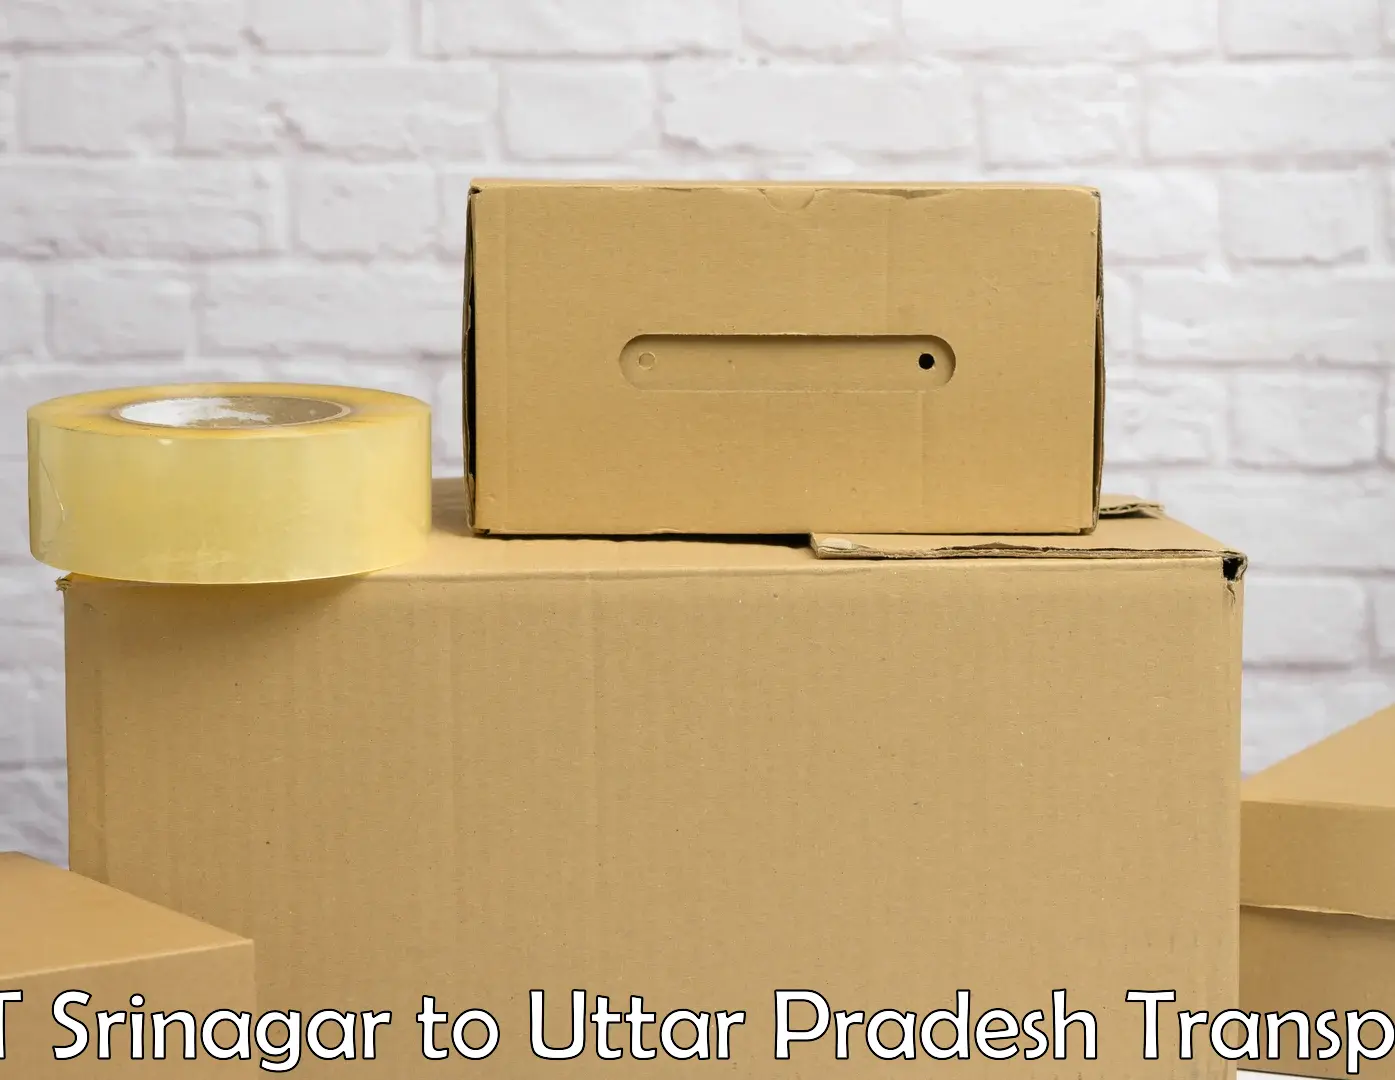 Container transport service NIT Srinagar to Hamirpur Uttar Pradesh